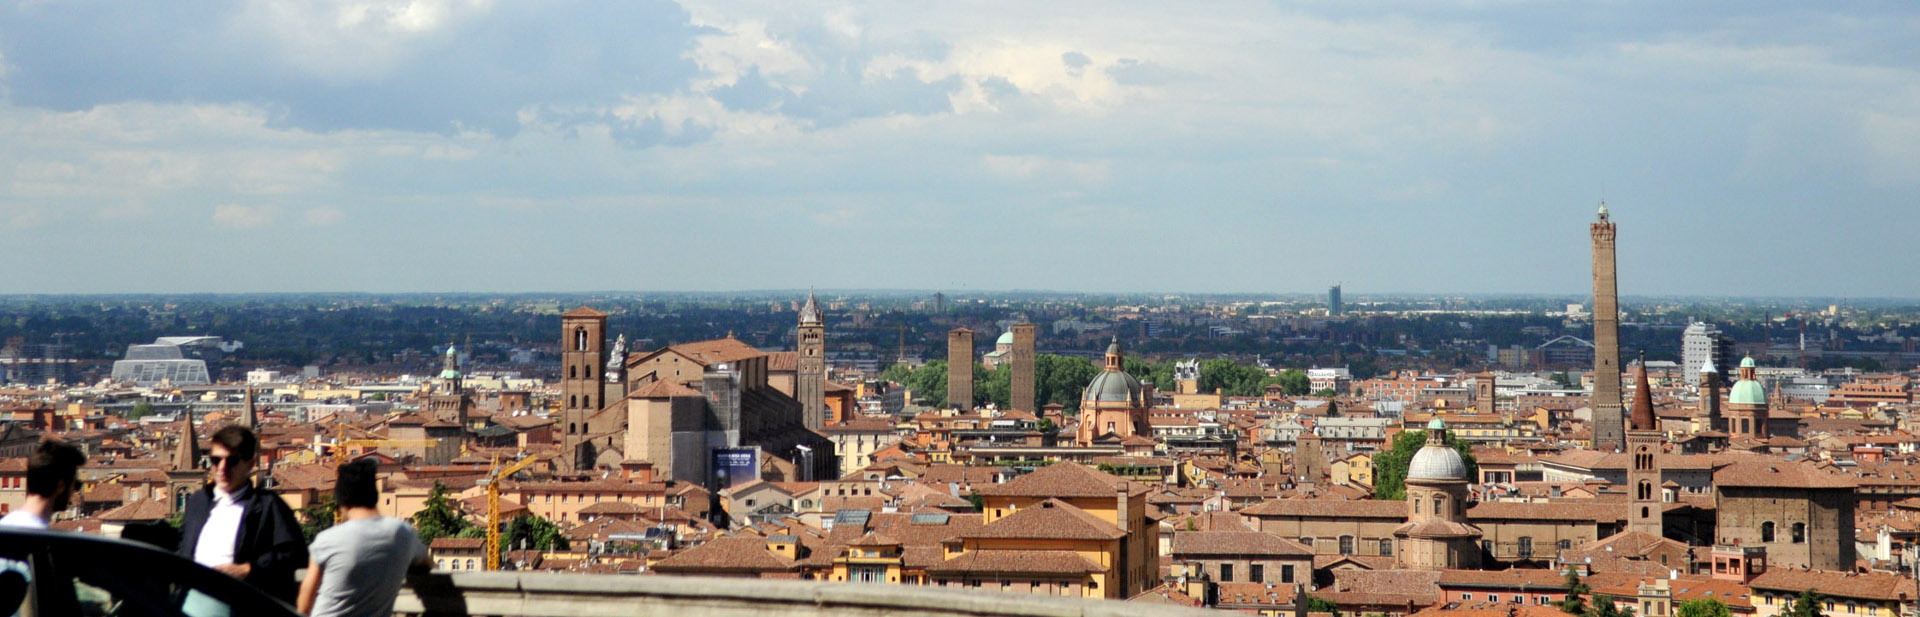 Foto: panoramica su Bologna. Archivio Città metropolitana di Bologna